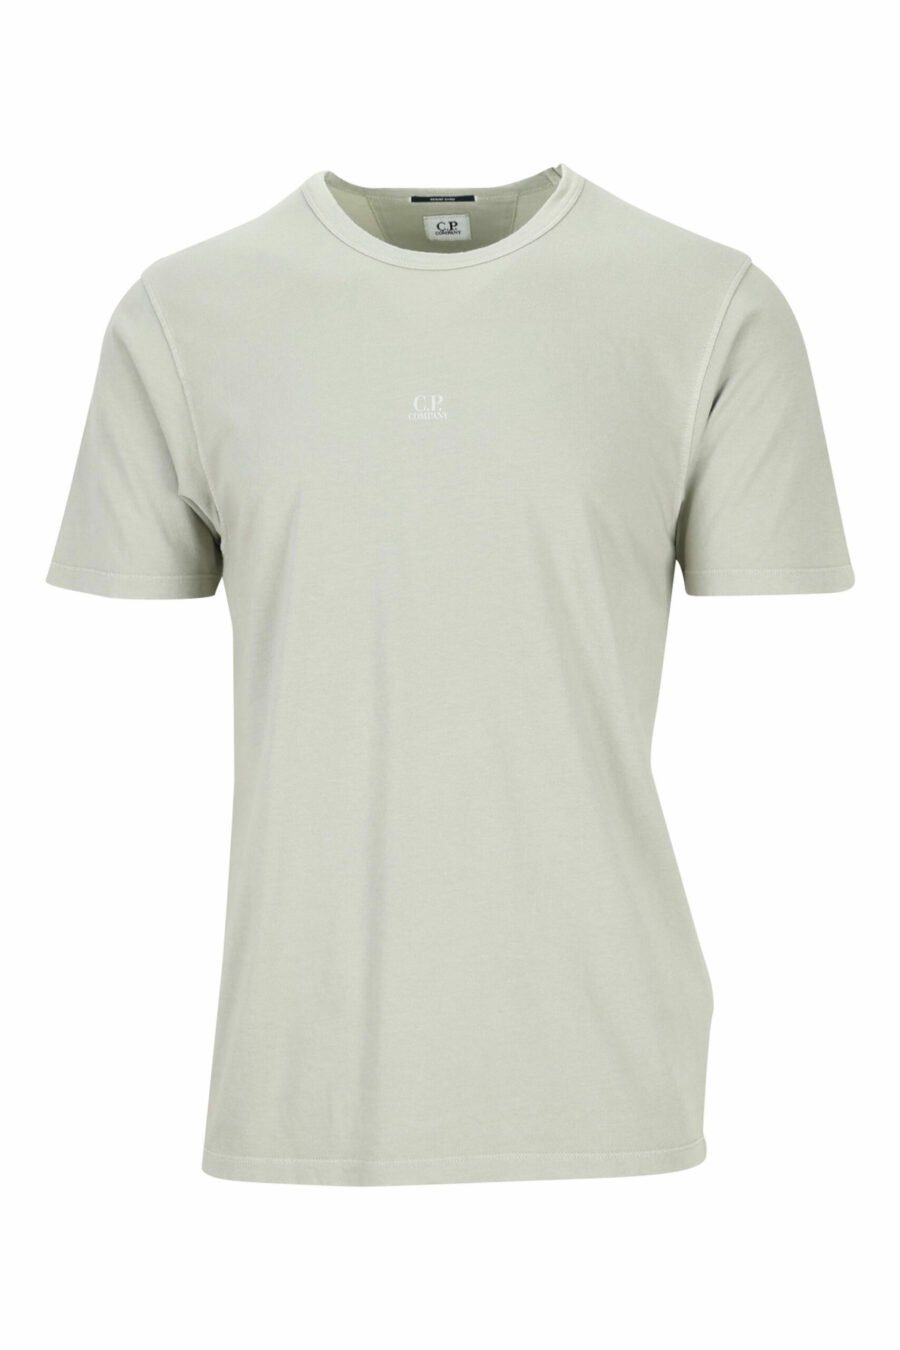 T-shirt beige avec mini-logo centré - 7620943594454 scaled